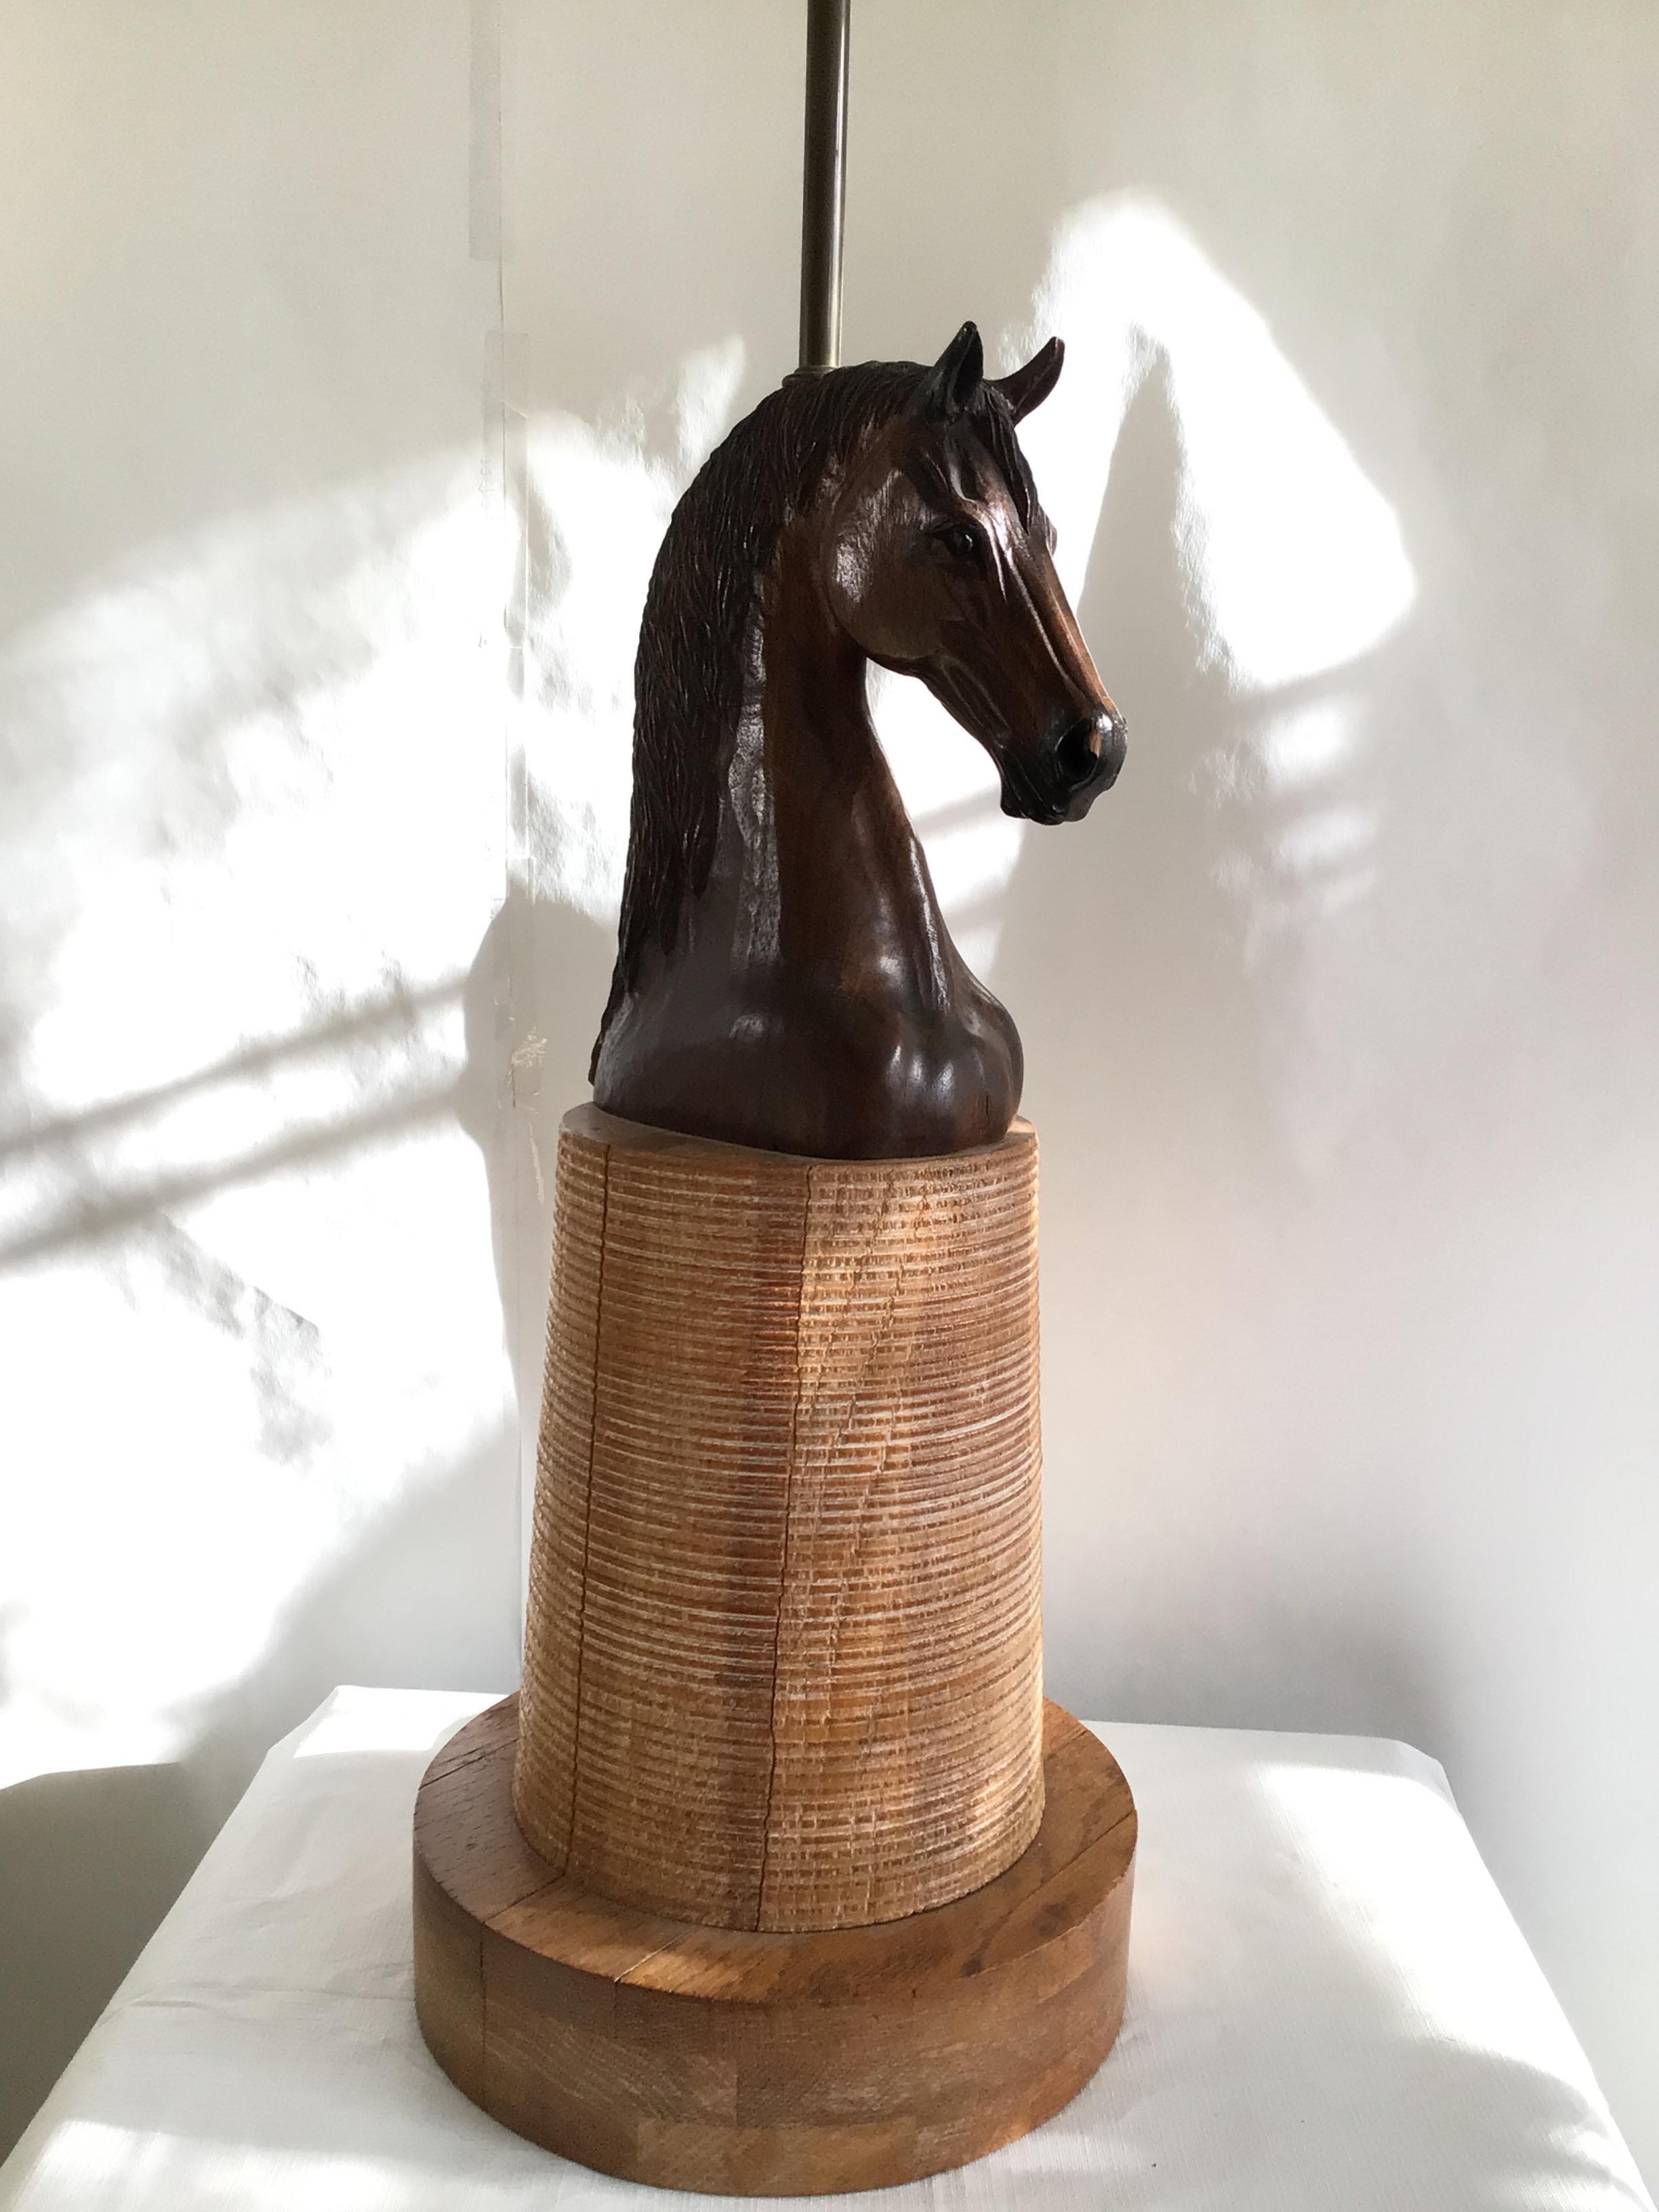 Lampe à tête de cheval des années 1950 sculptée à la main sur une base cylindrique en bois 
L'accent équestre parfait
Hauteur au sommet de la prise
Besoin d'un recâblage

